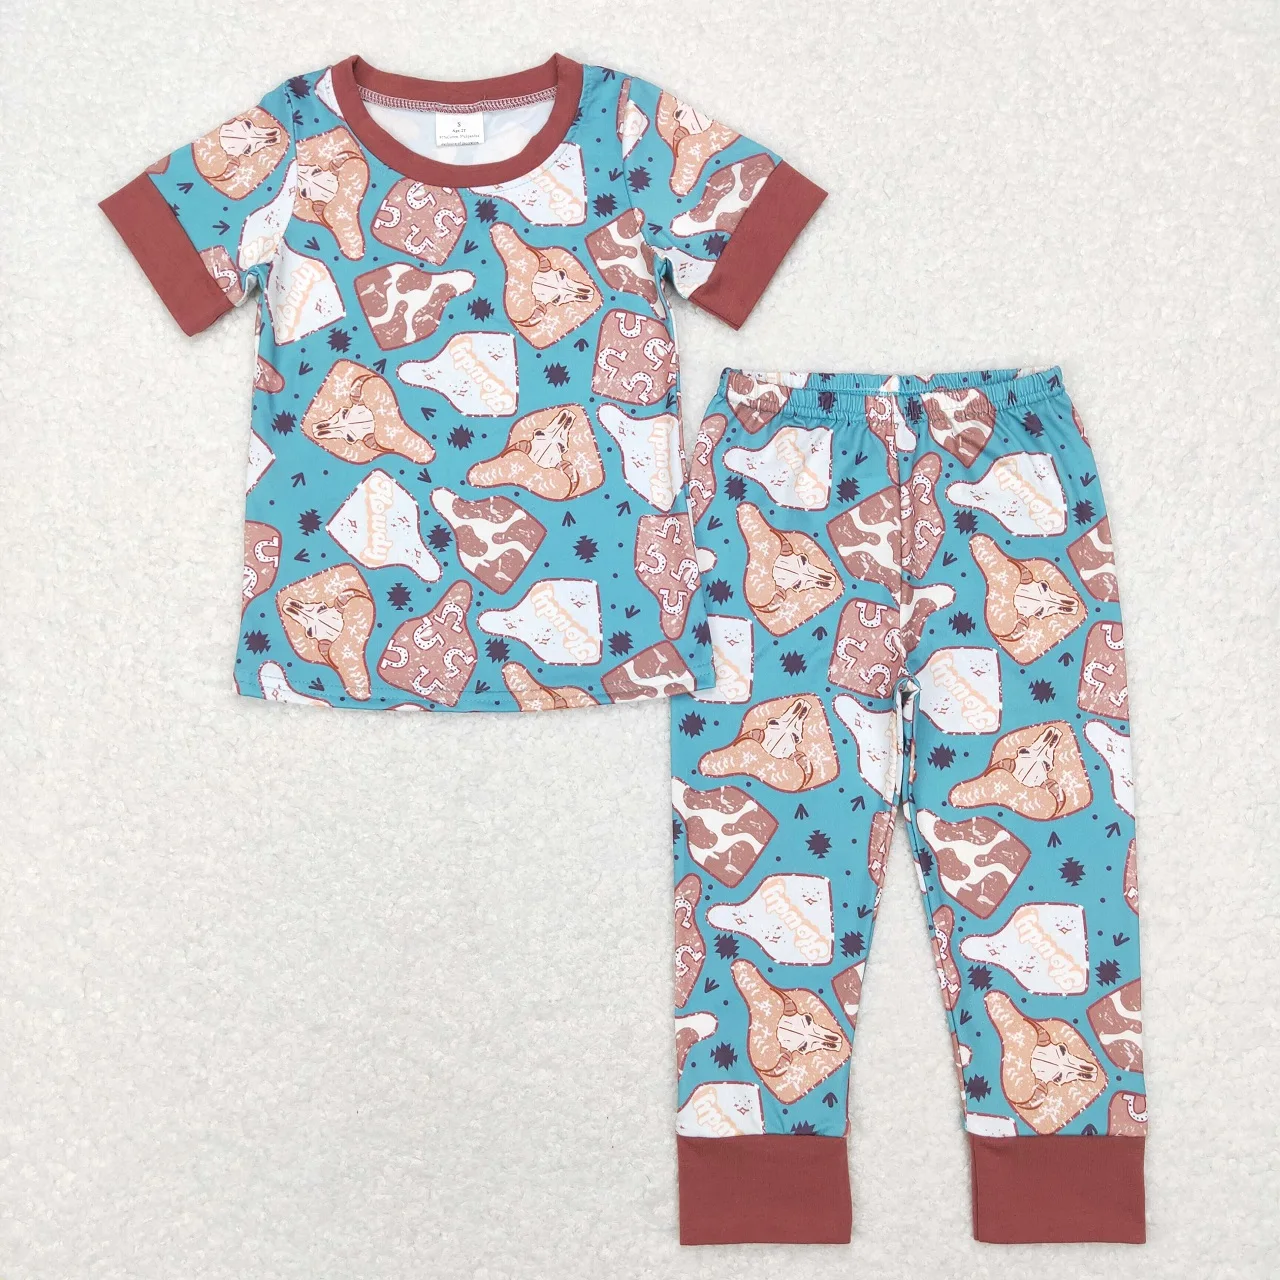 

Оптовая продажа, Детская футболка с короткими рукавами в западном стиле с бирками коровы, штаны, Ночная одежда, комплект одежды для сна для маленьких мальчиков, штаны, Пижамный наряд для младенцев